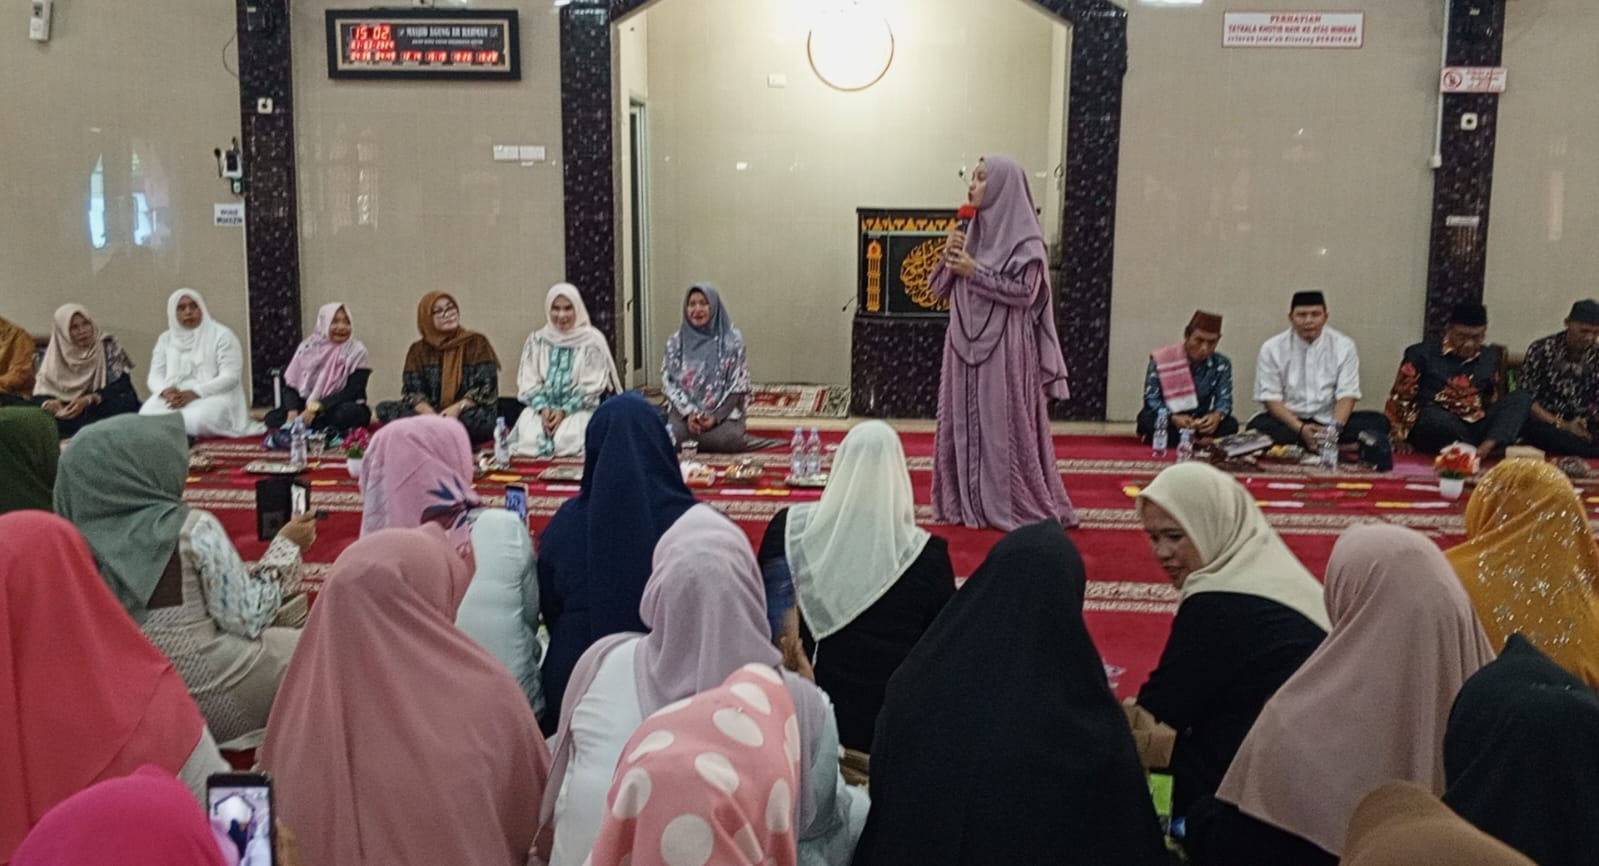 Sambut Bulan Suci Ramadhan Winarni Nanang Ermanto Hadirkan Penceramah Kondang Nabila Zainuri di Kcamatan Natar